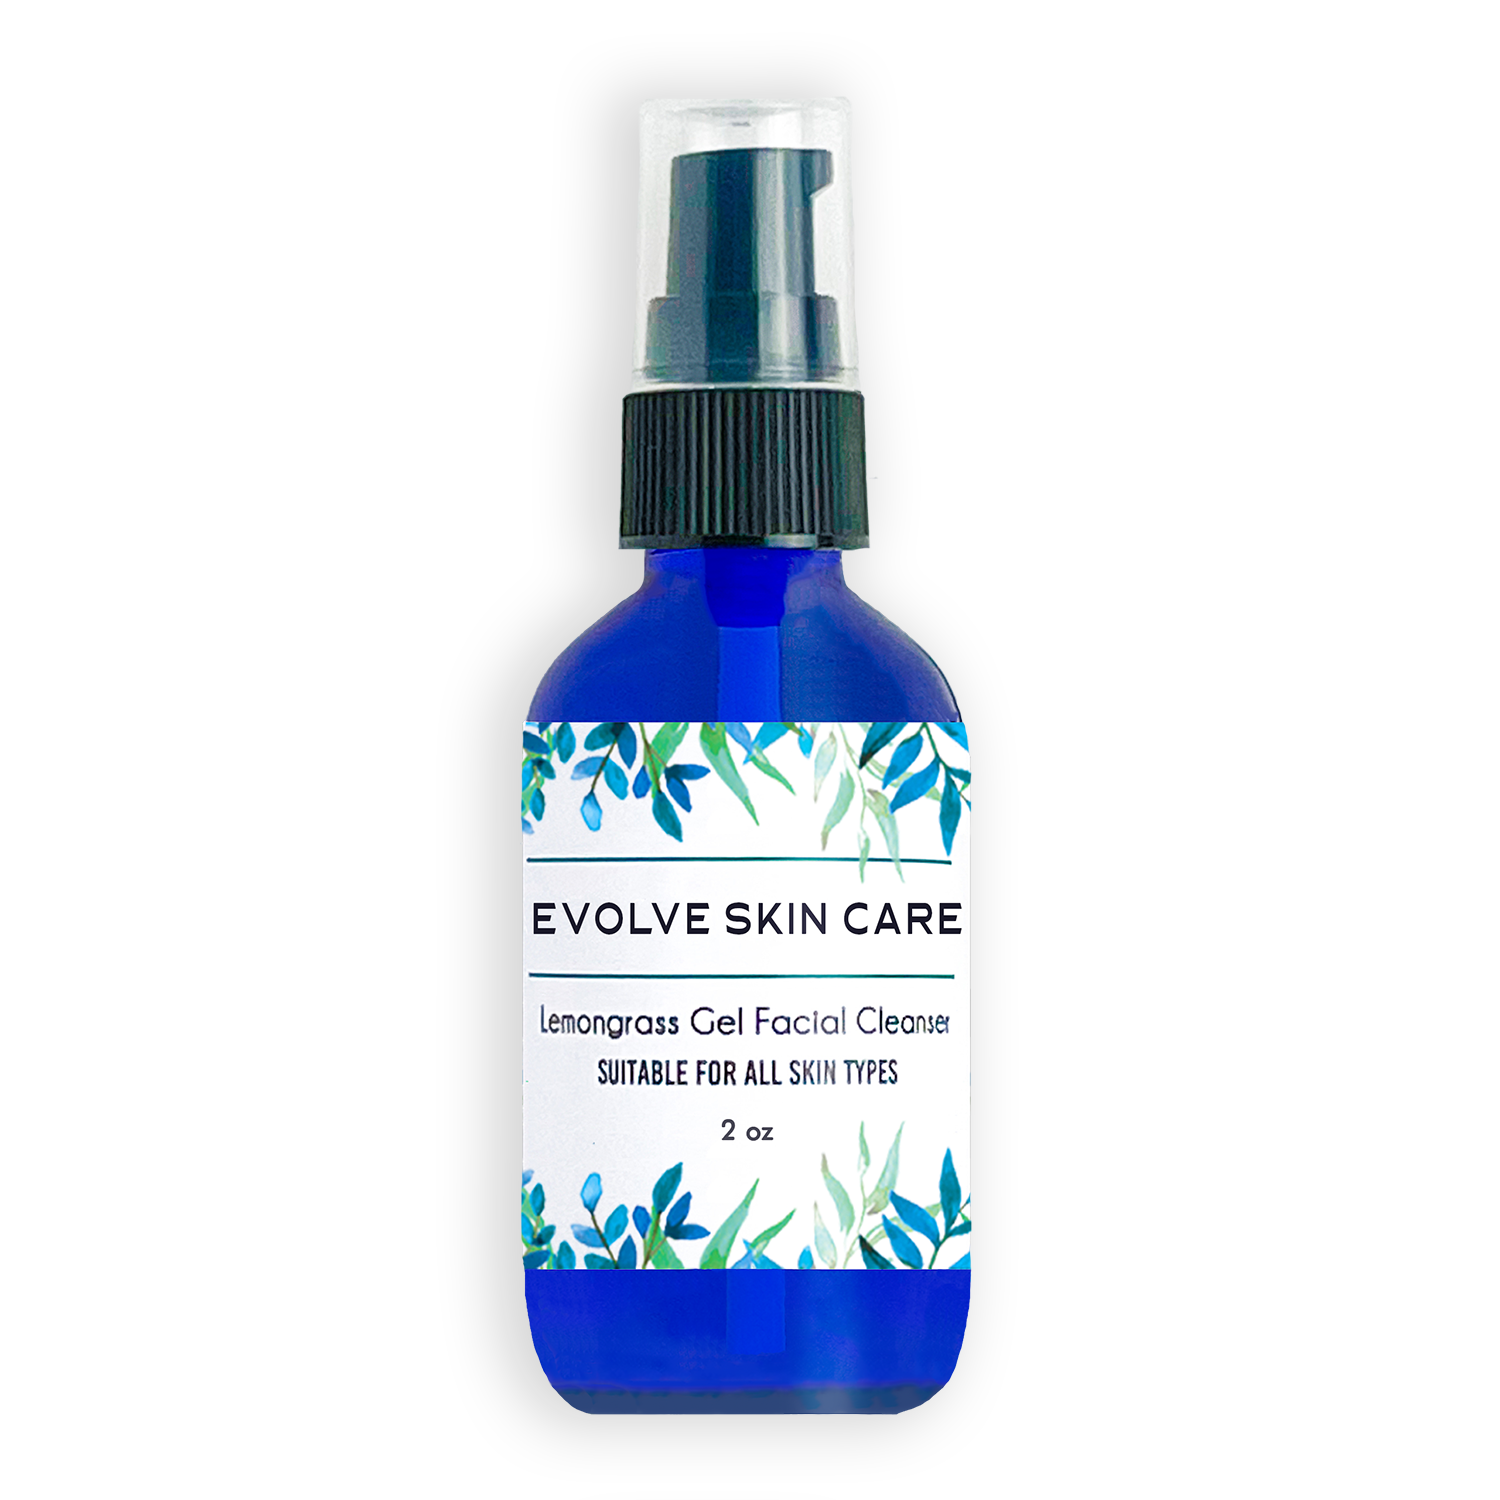 Evolve Skin Care Lemongrass Gel Facial Cleanser